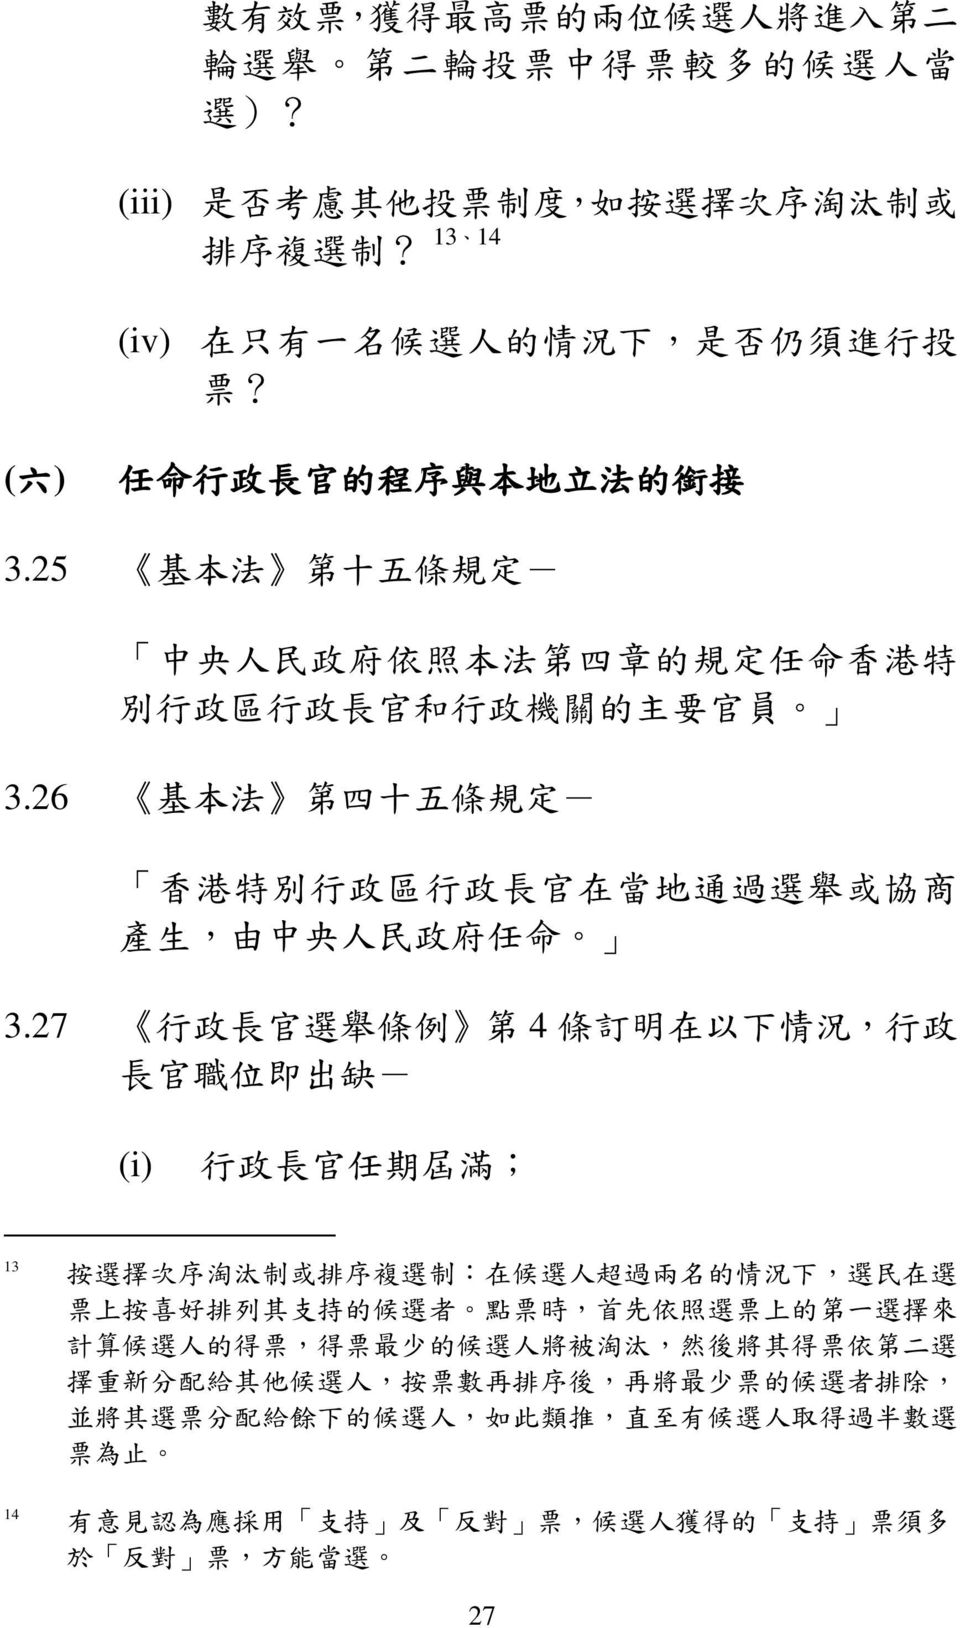 26 基 本 法 第 四 十 五 條 規 定 - 香 港 特 別 行 政 區 行 政 長 官 在 當 地 通 過 選 舉 或 協 商 產 生, 由 中 央 人 民 政 府 任 命 3.